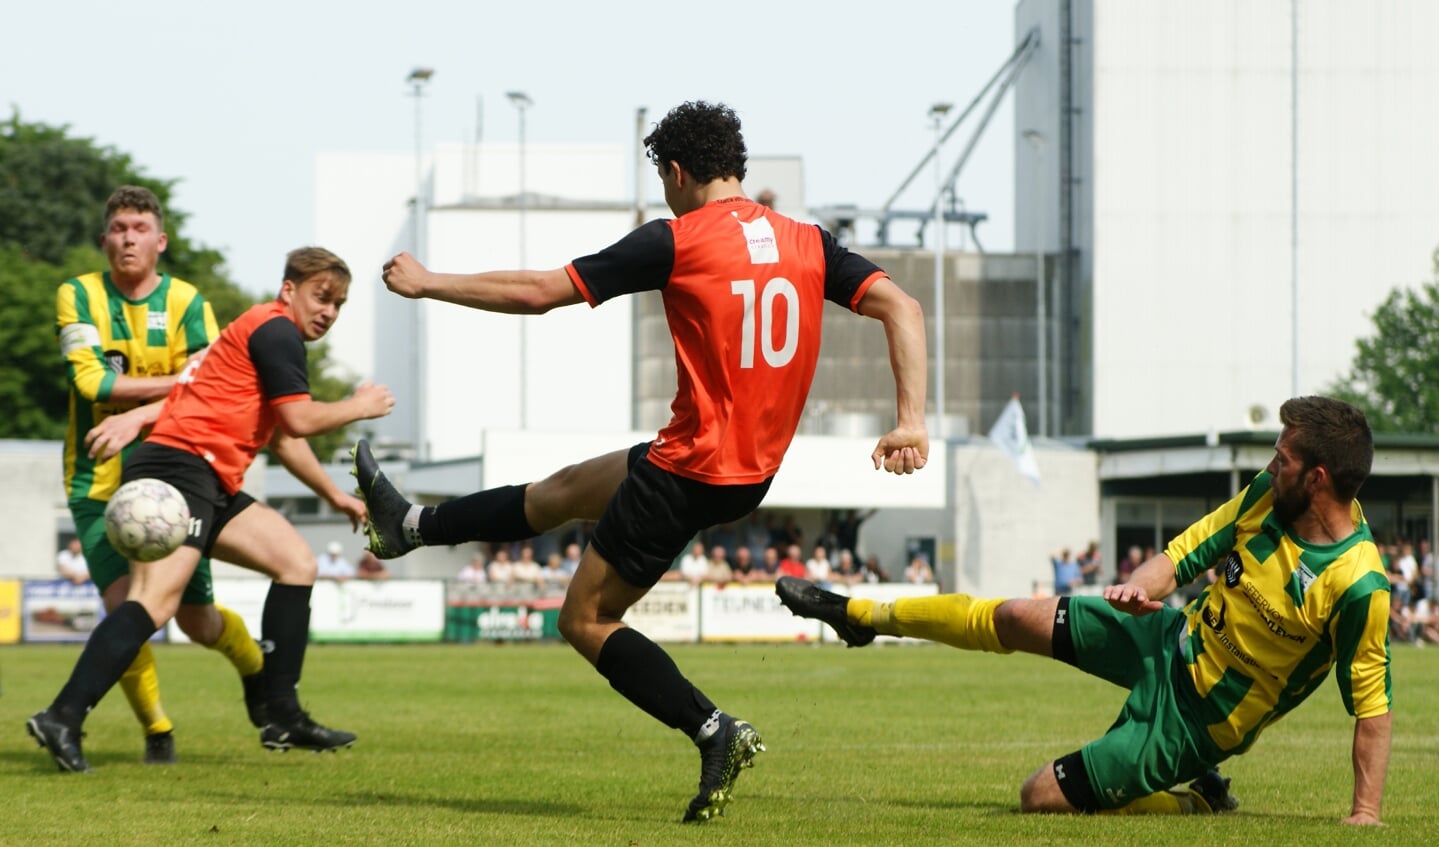 Constantia versloeg Vitesse'08 en veroordeelde de gasten daarmee tot degradatie.